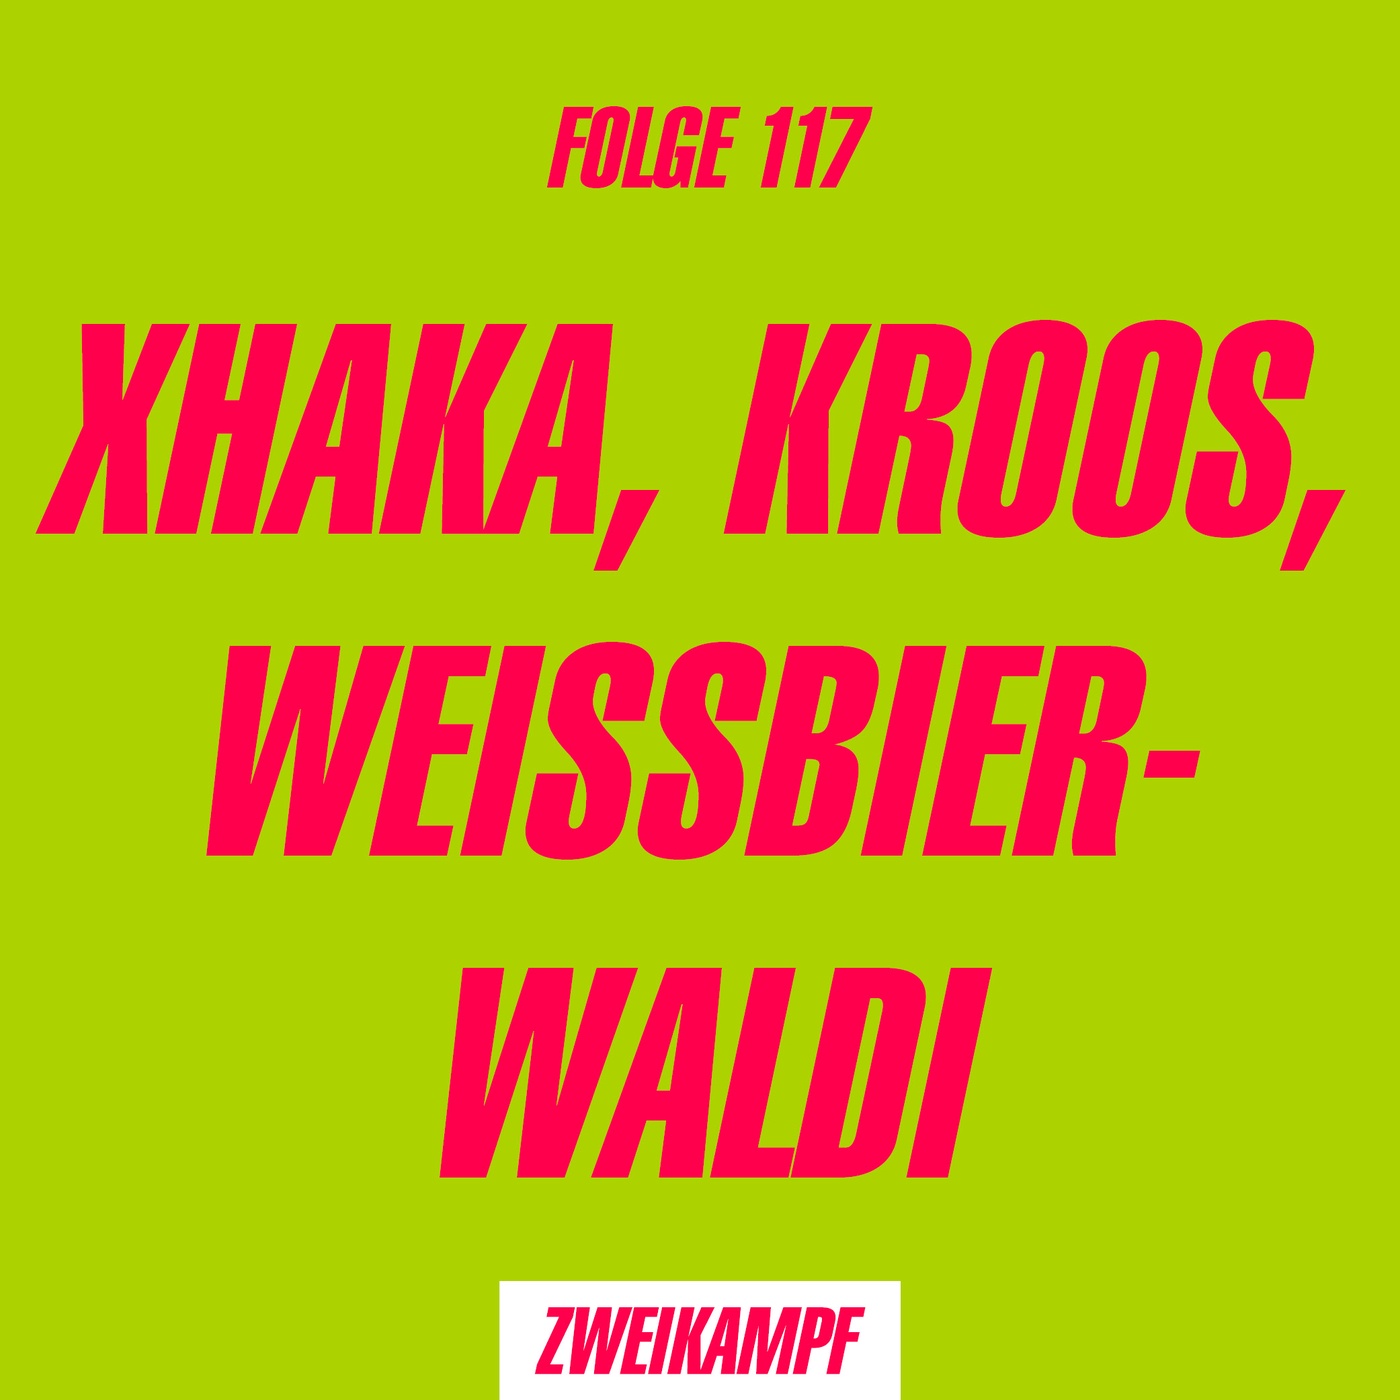 Folge 117: Xhaka, Kroos, Weissbier-Waldi